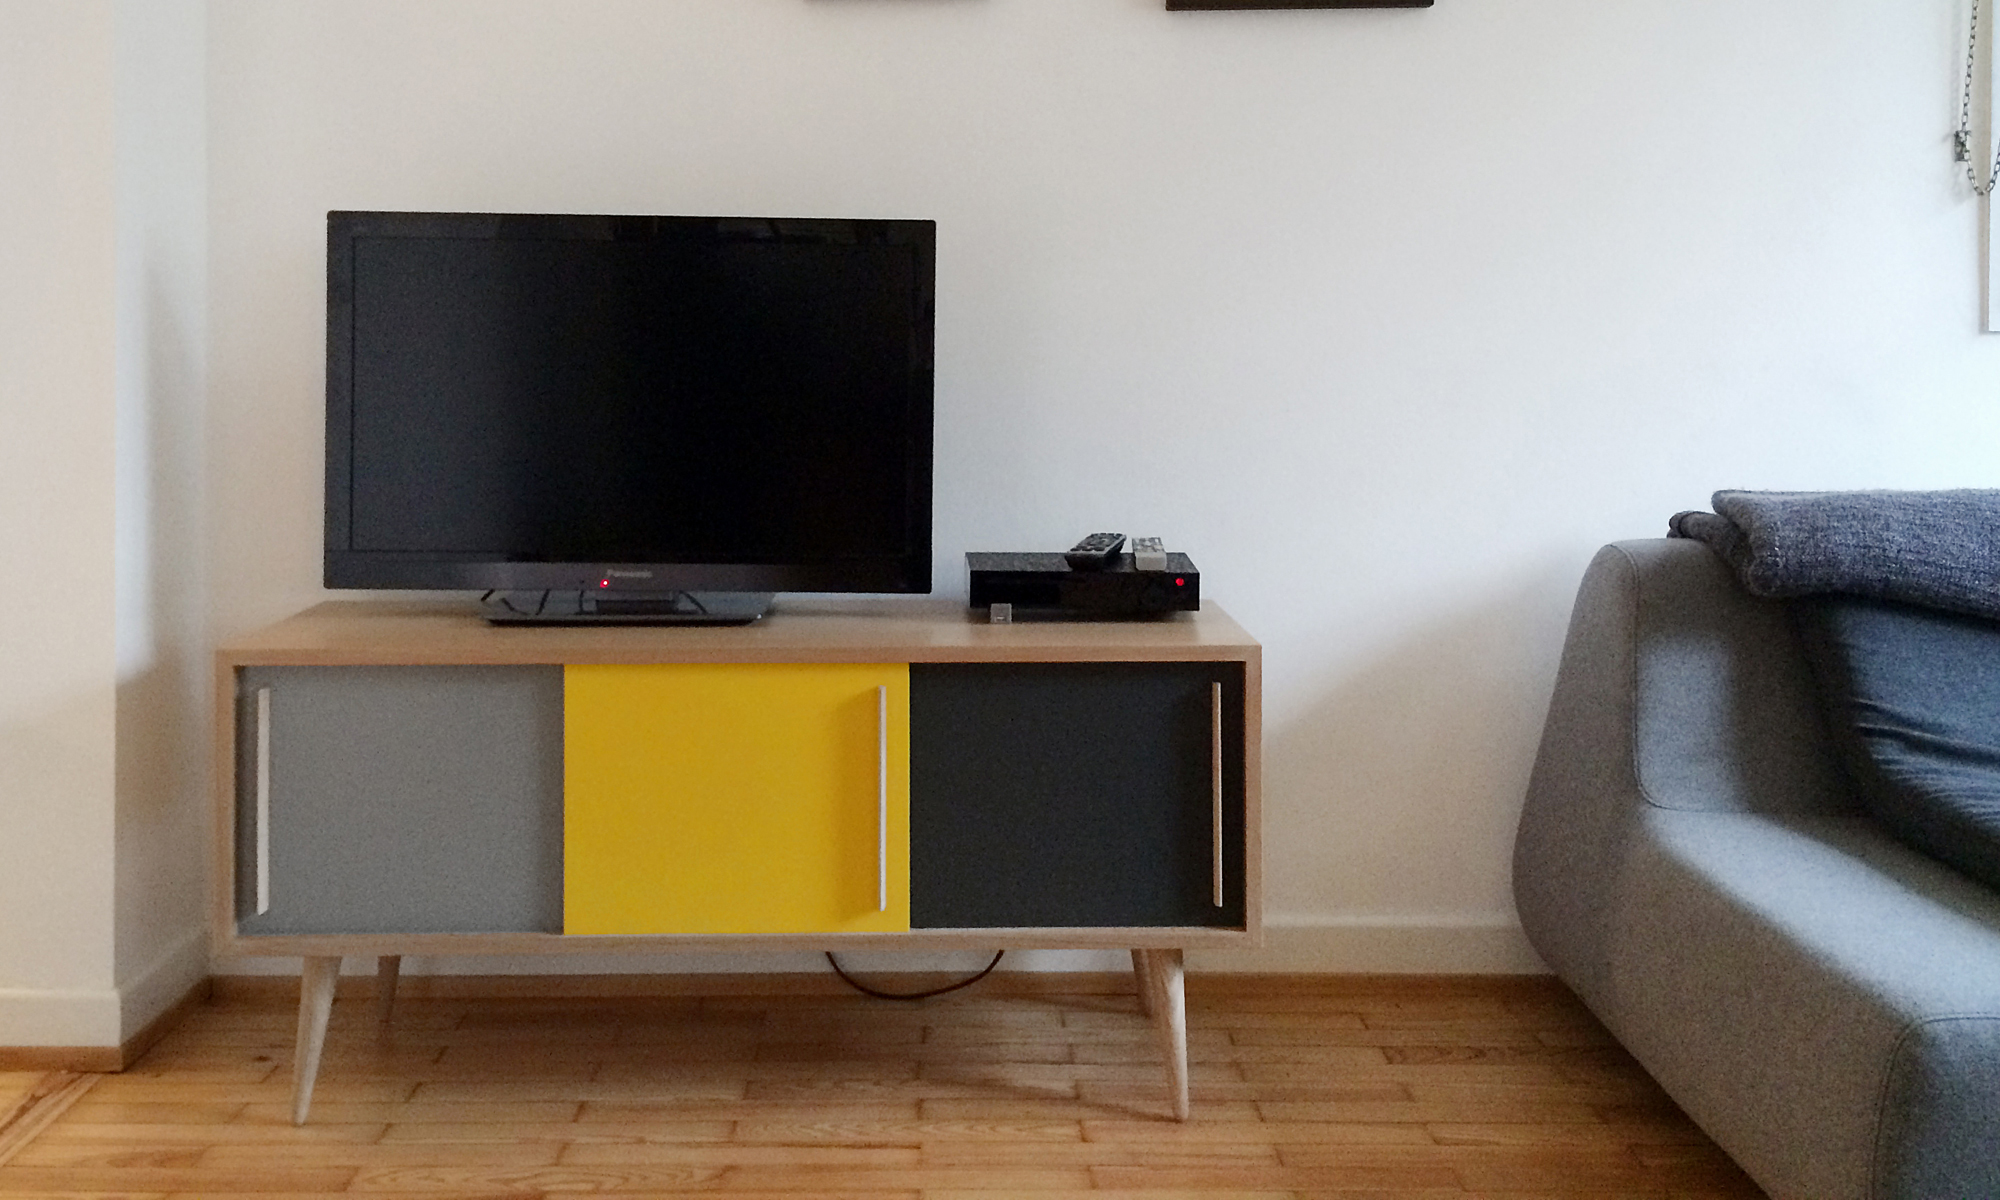 Petit et pratique, le meuble TV/Hifi style vintage